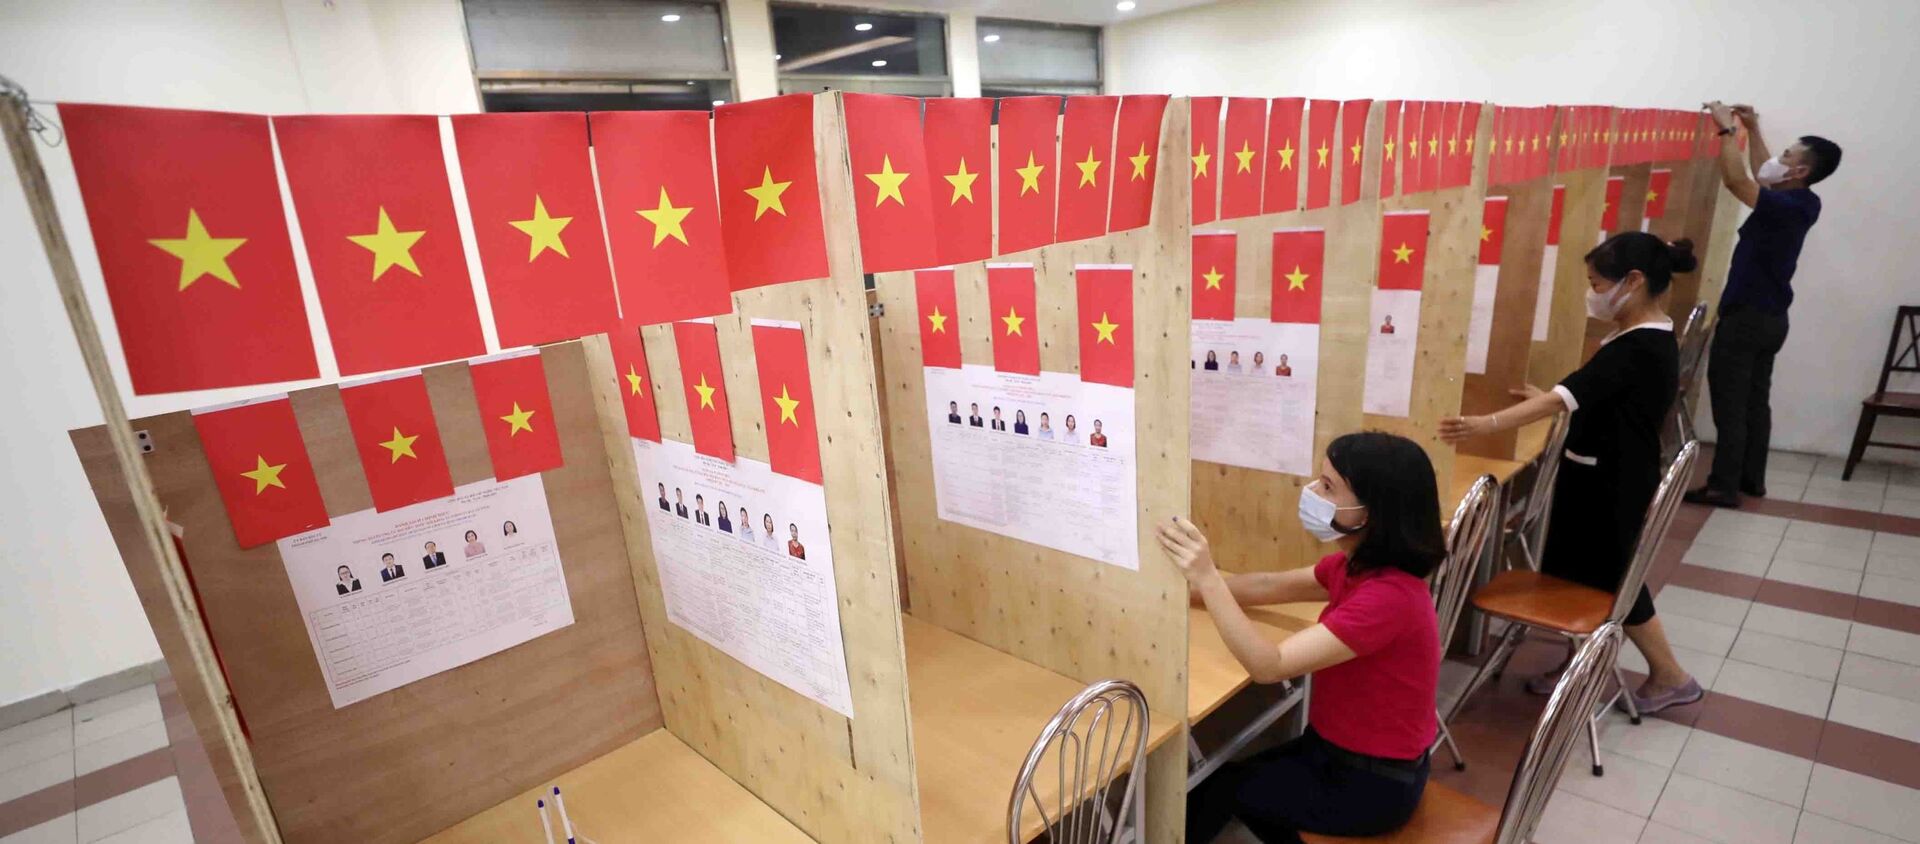 Sinh viên ngoại tỉnh ở lại Hà Nội trong ngày bầu cử đều được đảm bảo thực hiện quyền và nghĩa vụ cử tri. - Sputnik Việt Nam, 1920, 21.05.2021